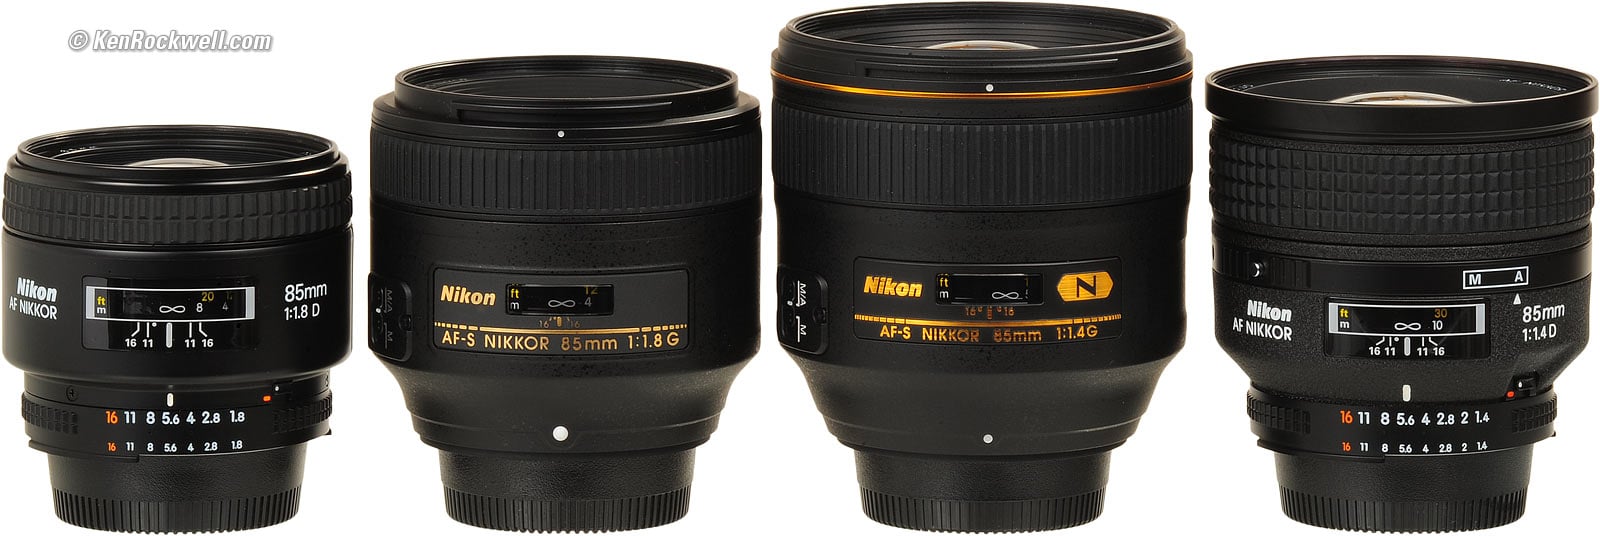 Nikon  85mm F1.8G